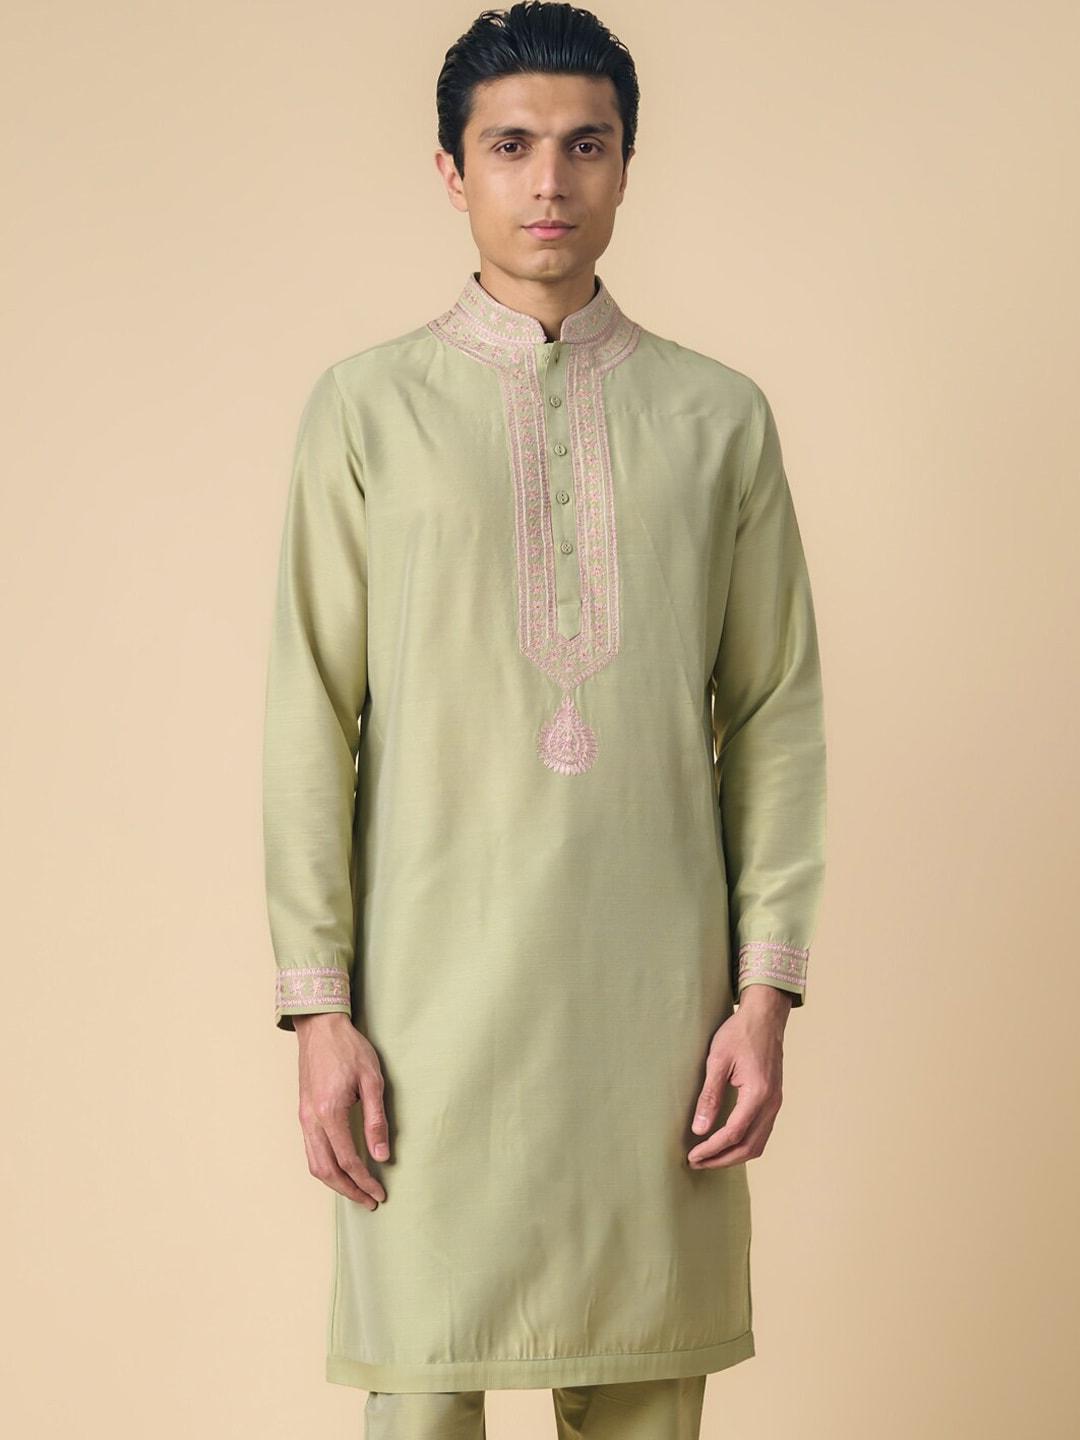 tasva-ethnic-motifs-yoke-design-thread-work-straight-kurta-with-pyjamas